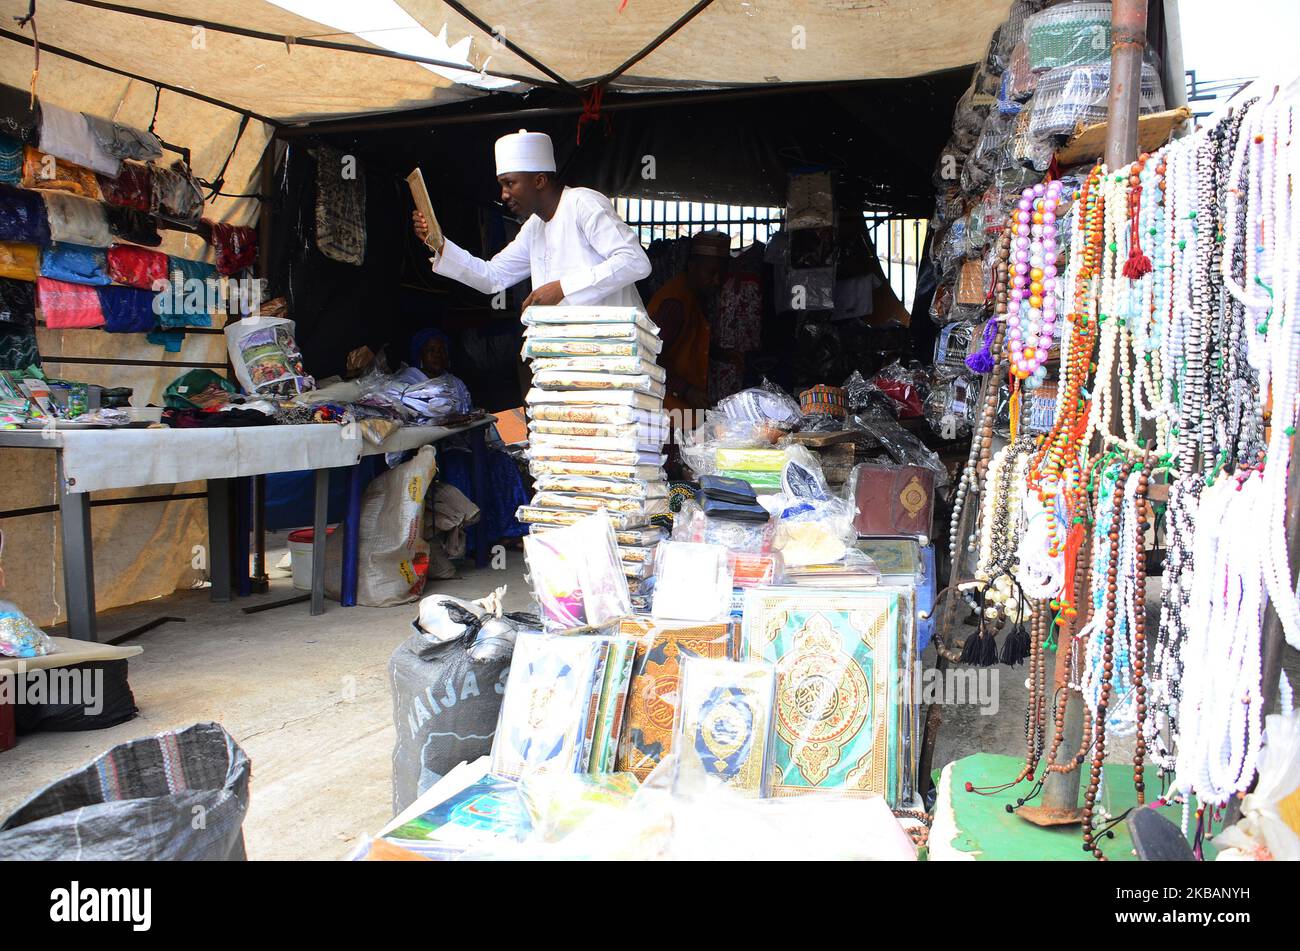 Am 10. November 2019, um Eid el Maulud zu feiern, schaut ein Mann in den Spiegel, um in einem beliebten Geschäft, in dem islamische Kleidung und asiatische Kleidung verkauft werden, im Geschäftsviertel von Alausa in Lagos, Nigeria, eine Mütze zu kaufen. Eid el Maulud ist der Geburtstag des heiligen Propheten Muhammad, dem Tag, an dem alle 12. Rabi'ul Awwal des islamischen Kalenders markiert sind. Die Lehre des Islam konzentriert sich auf den Glauben an Gott, die Hingabe und den Dienst an der Menschheit. (Foto von Olukayode Jaiyeola/NurPhoto) Stockfoto